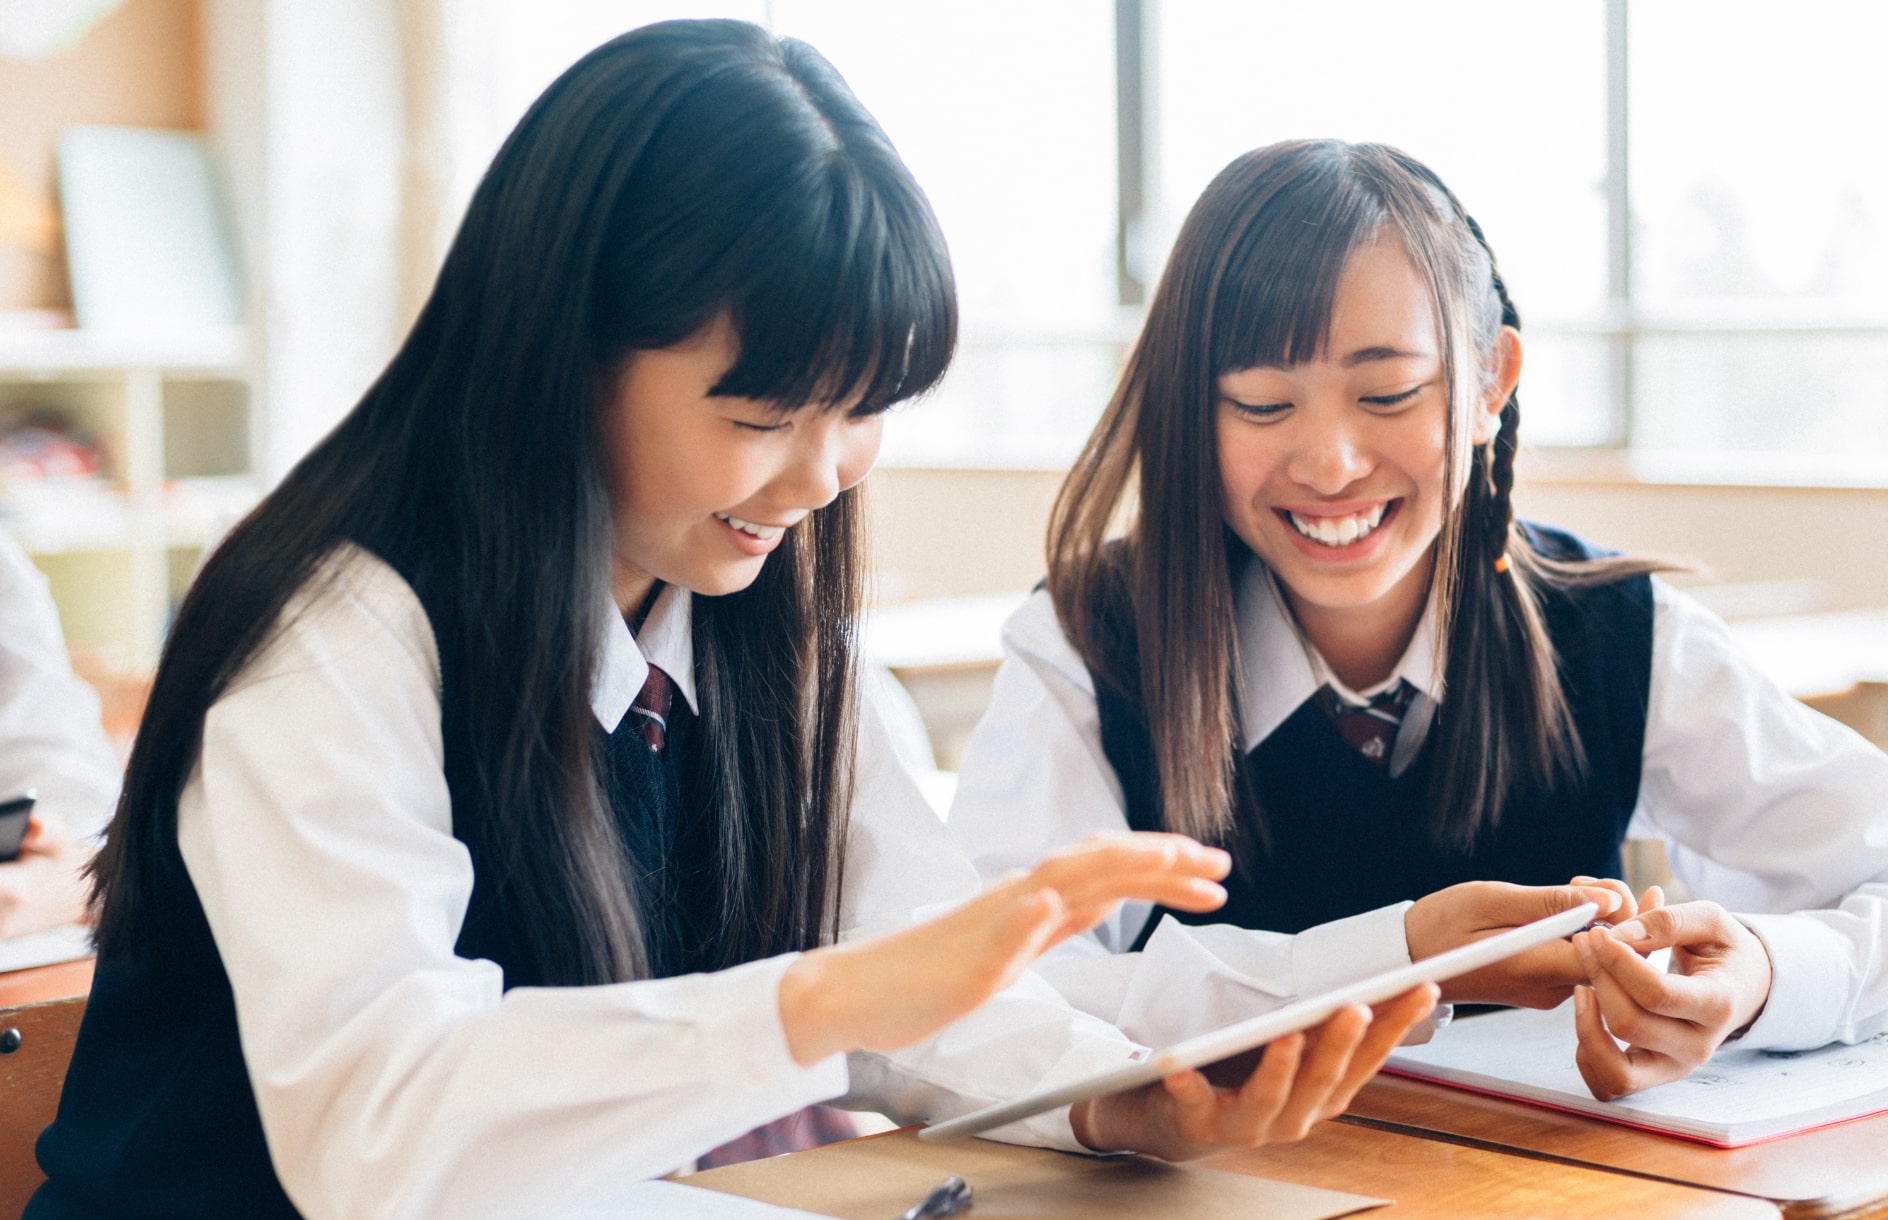 笑顔でタブレットを操作する2人の女子生徒の写真